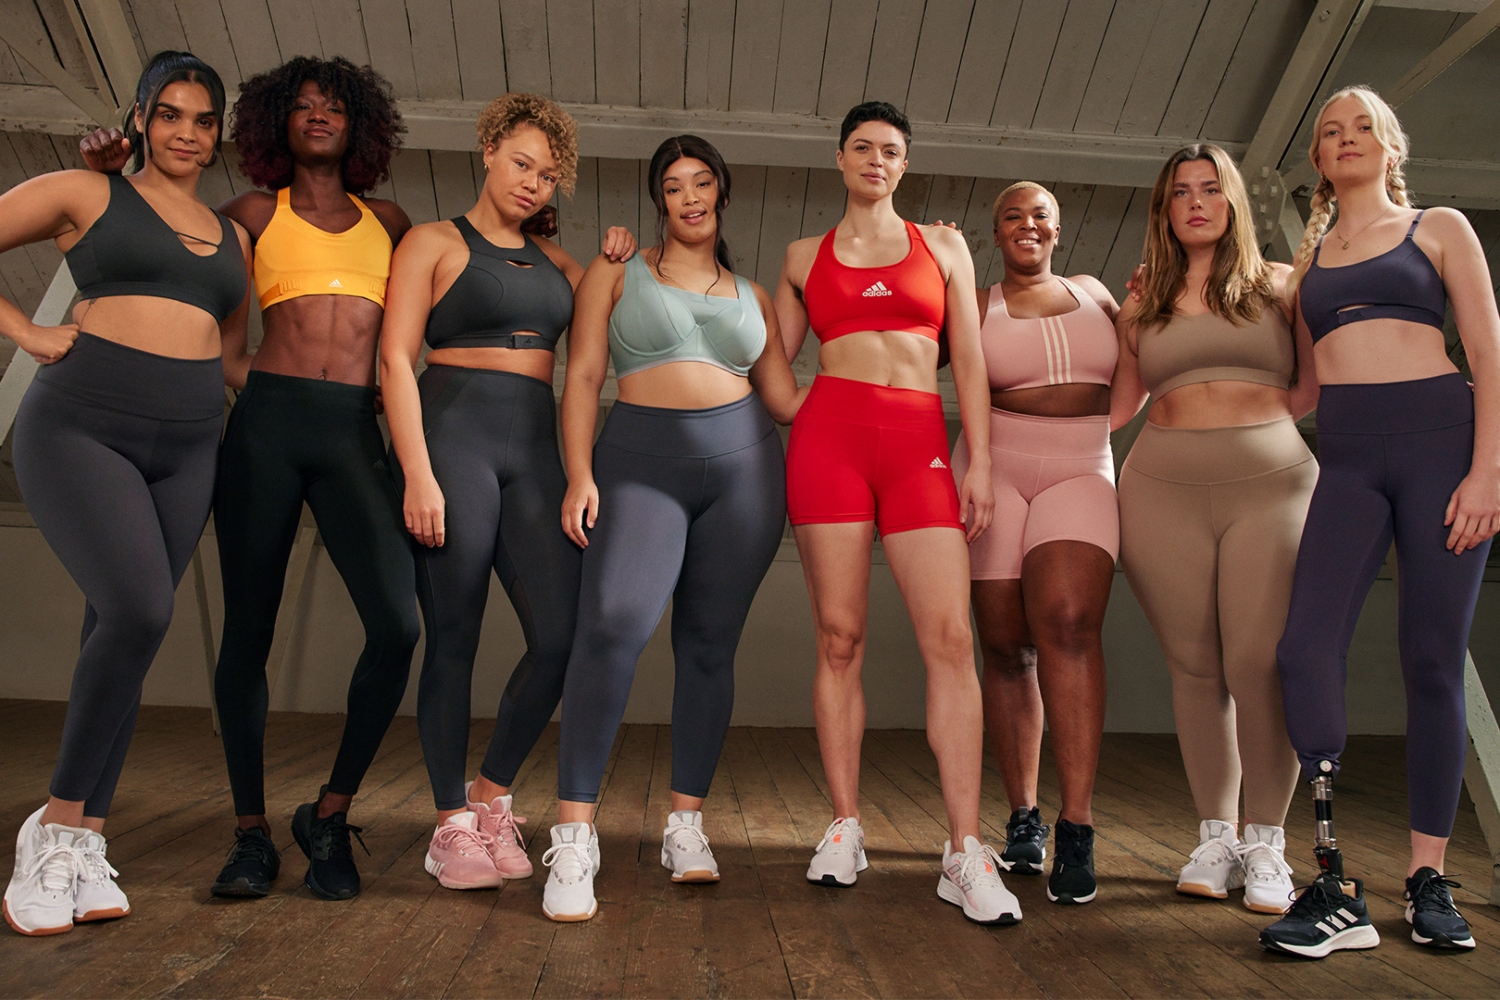 Nike Women's Yoga Pants  Best Price Guarantee at DICK'S